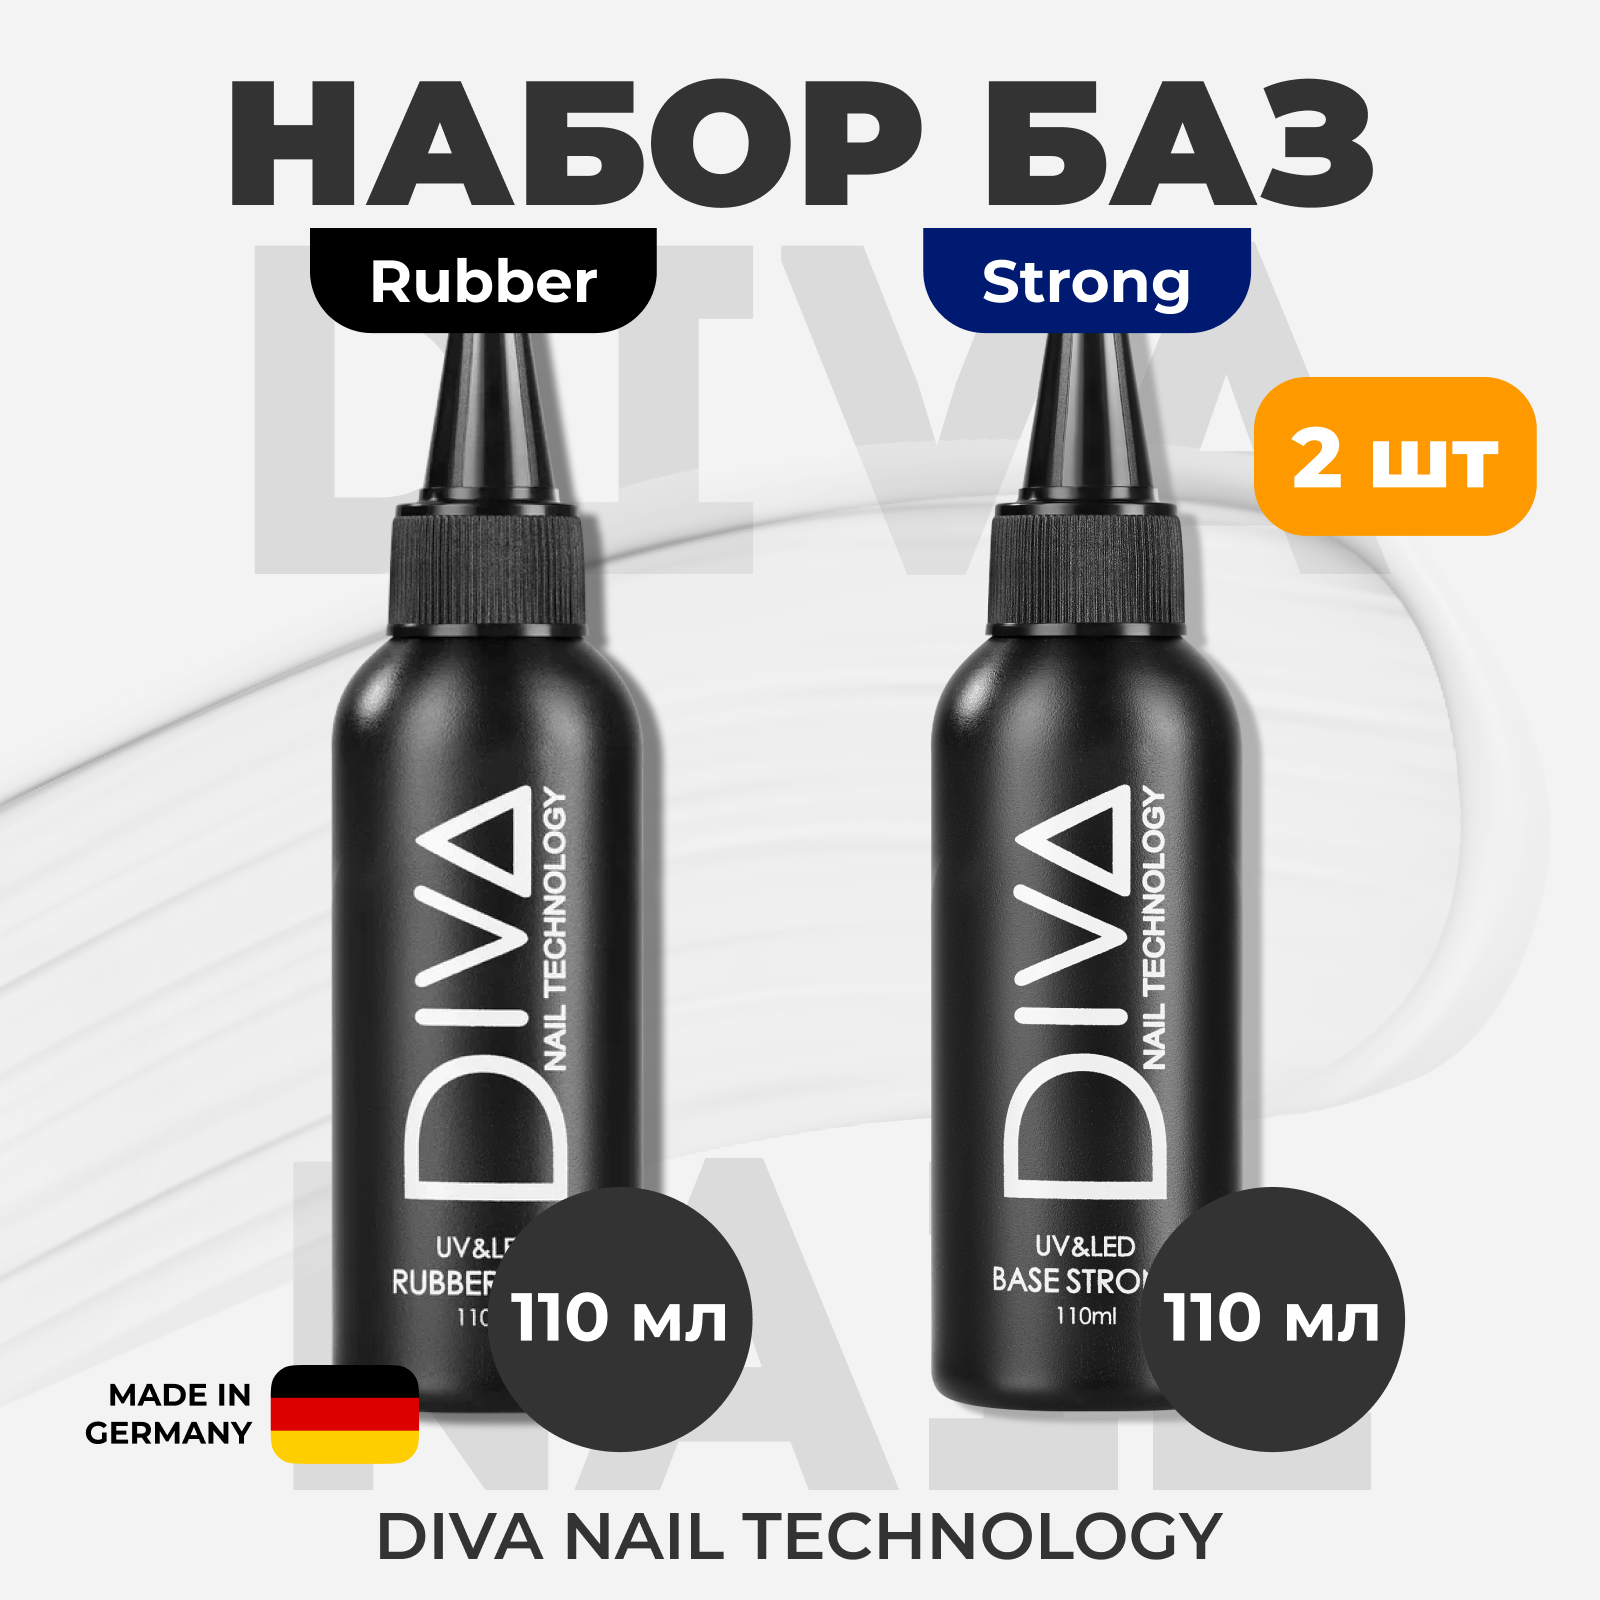 Набор баз для гель-лака Diva Nail Technology рабер и стронг для ногтей прозрачная 110 мл